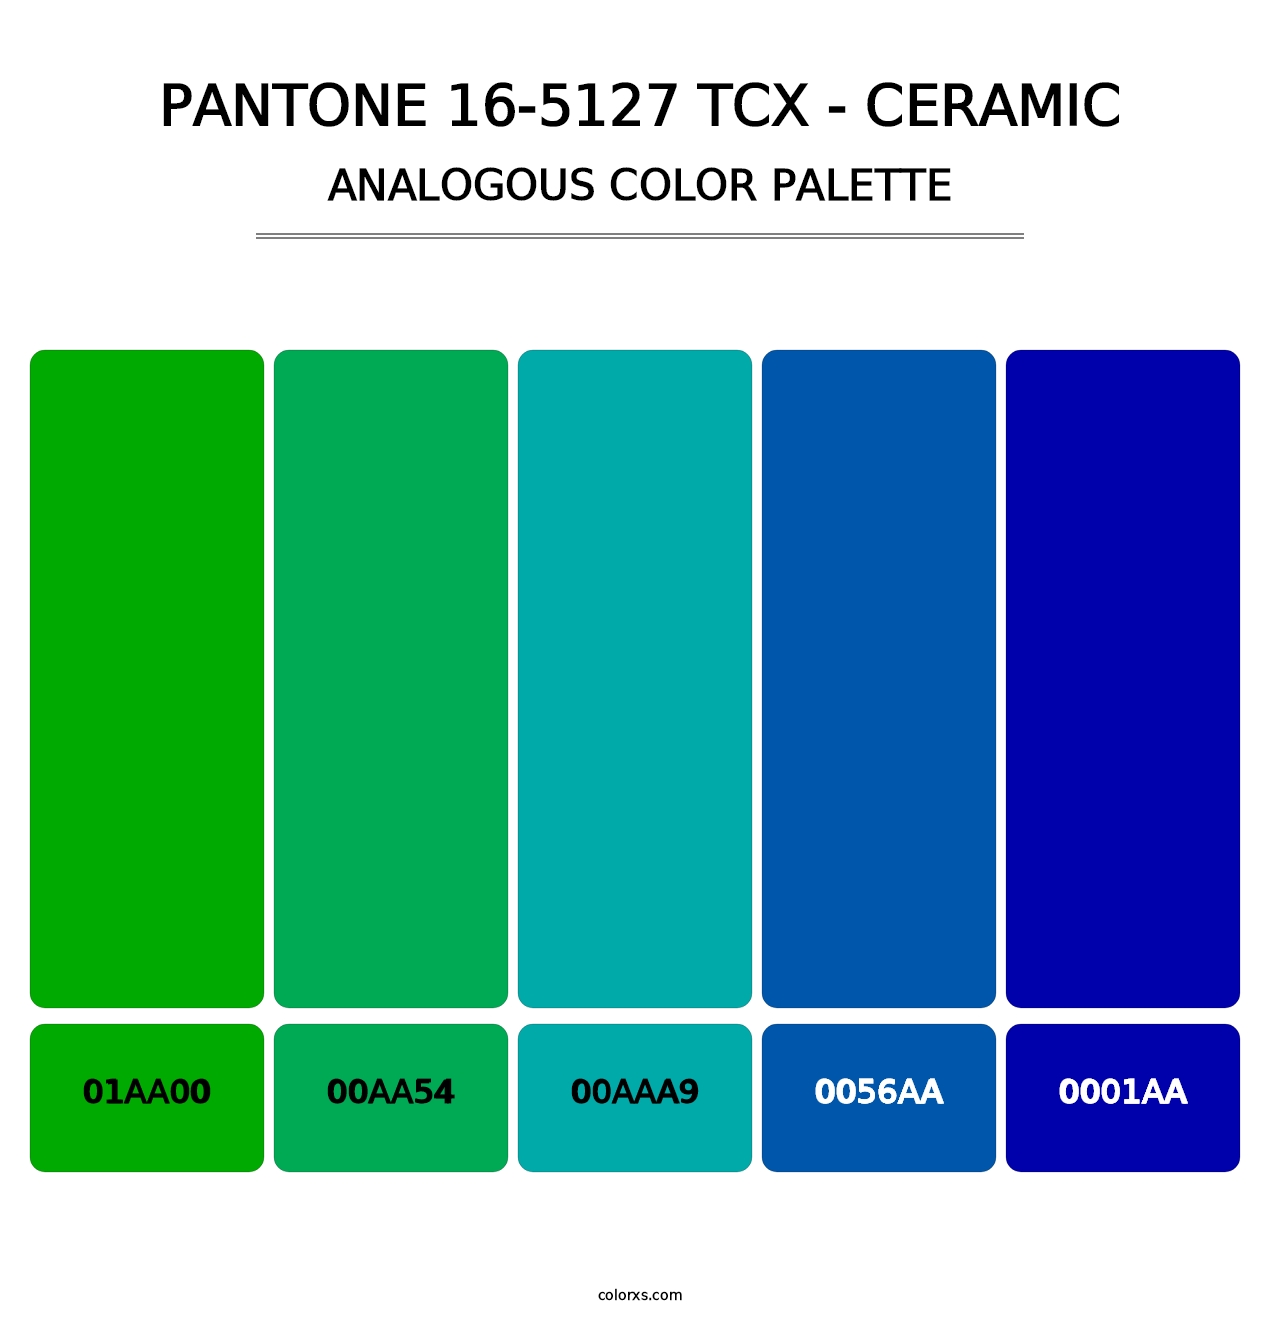 PANTONE 16-5127 TCX - Ceramic - Analogous Color Palette